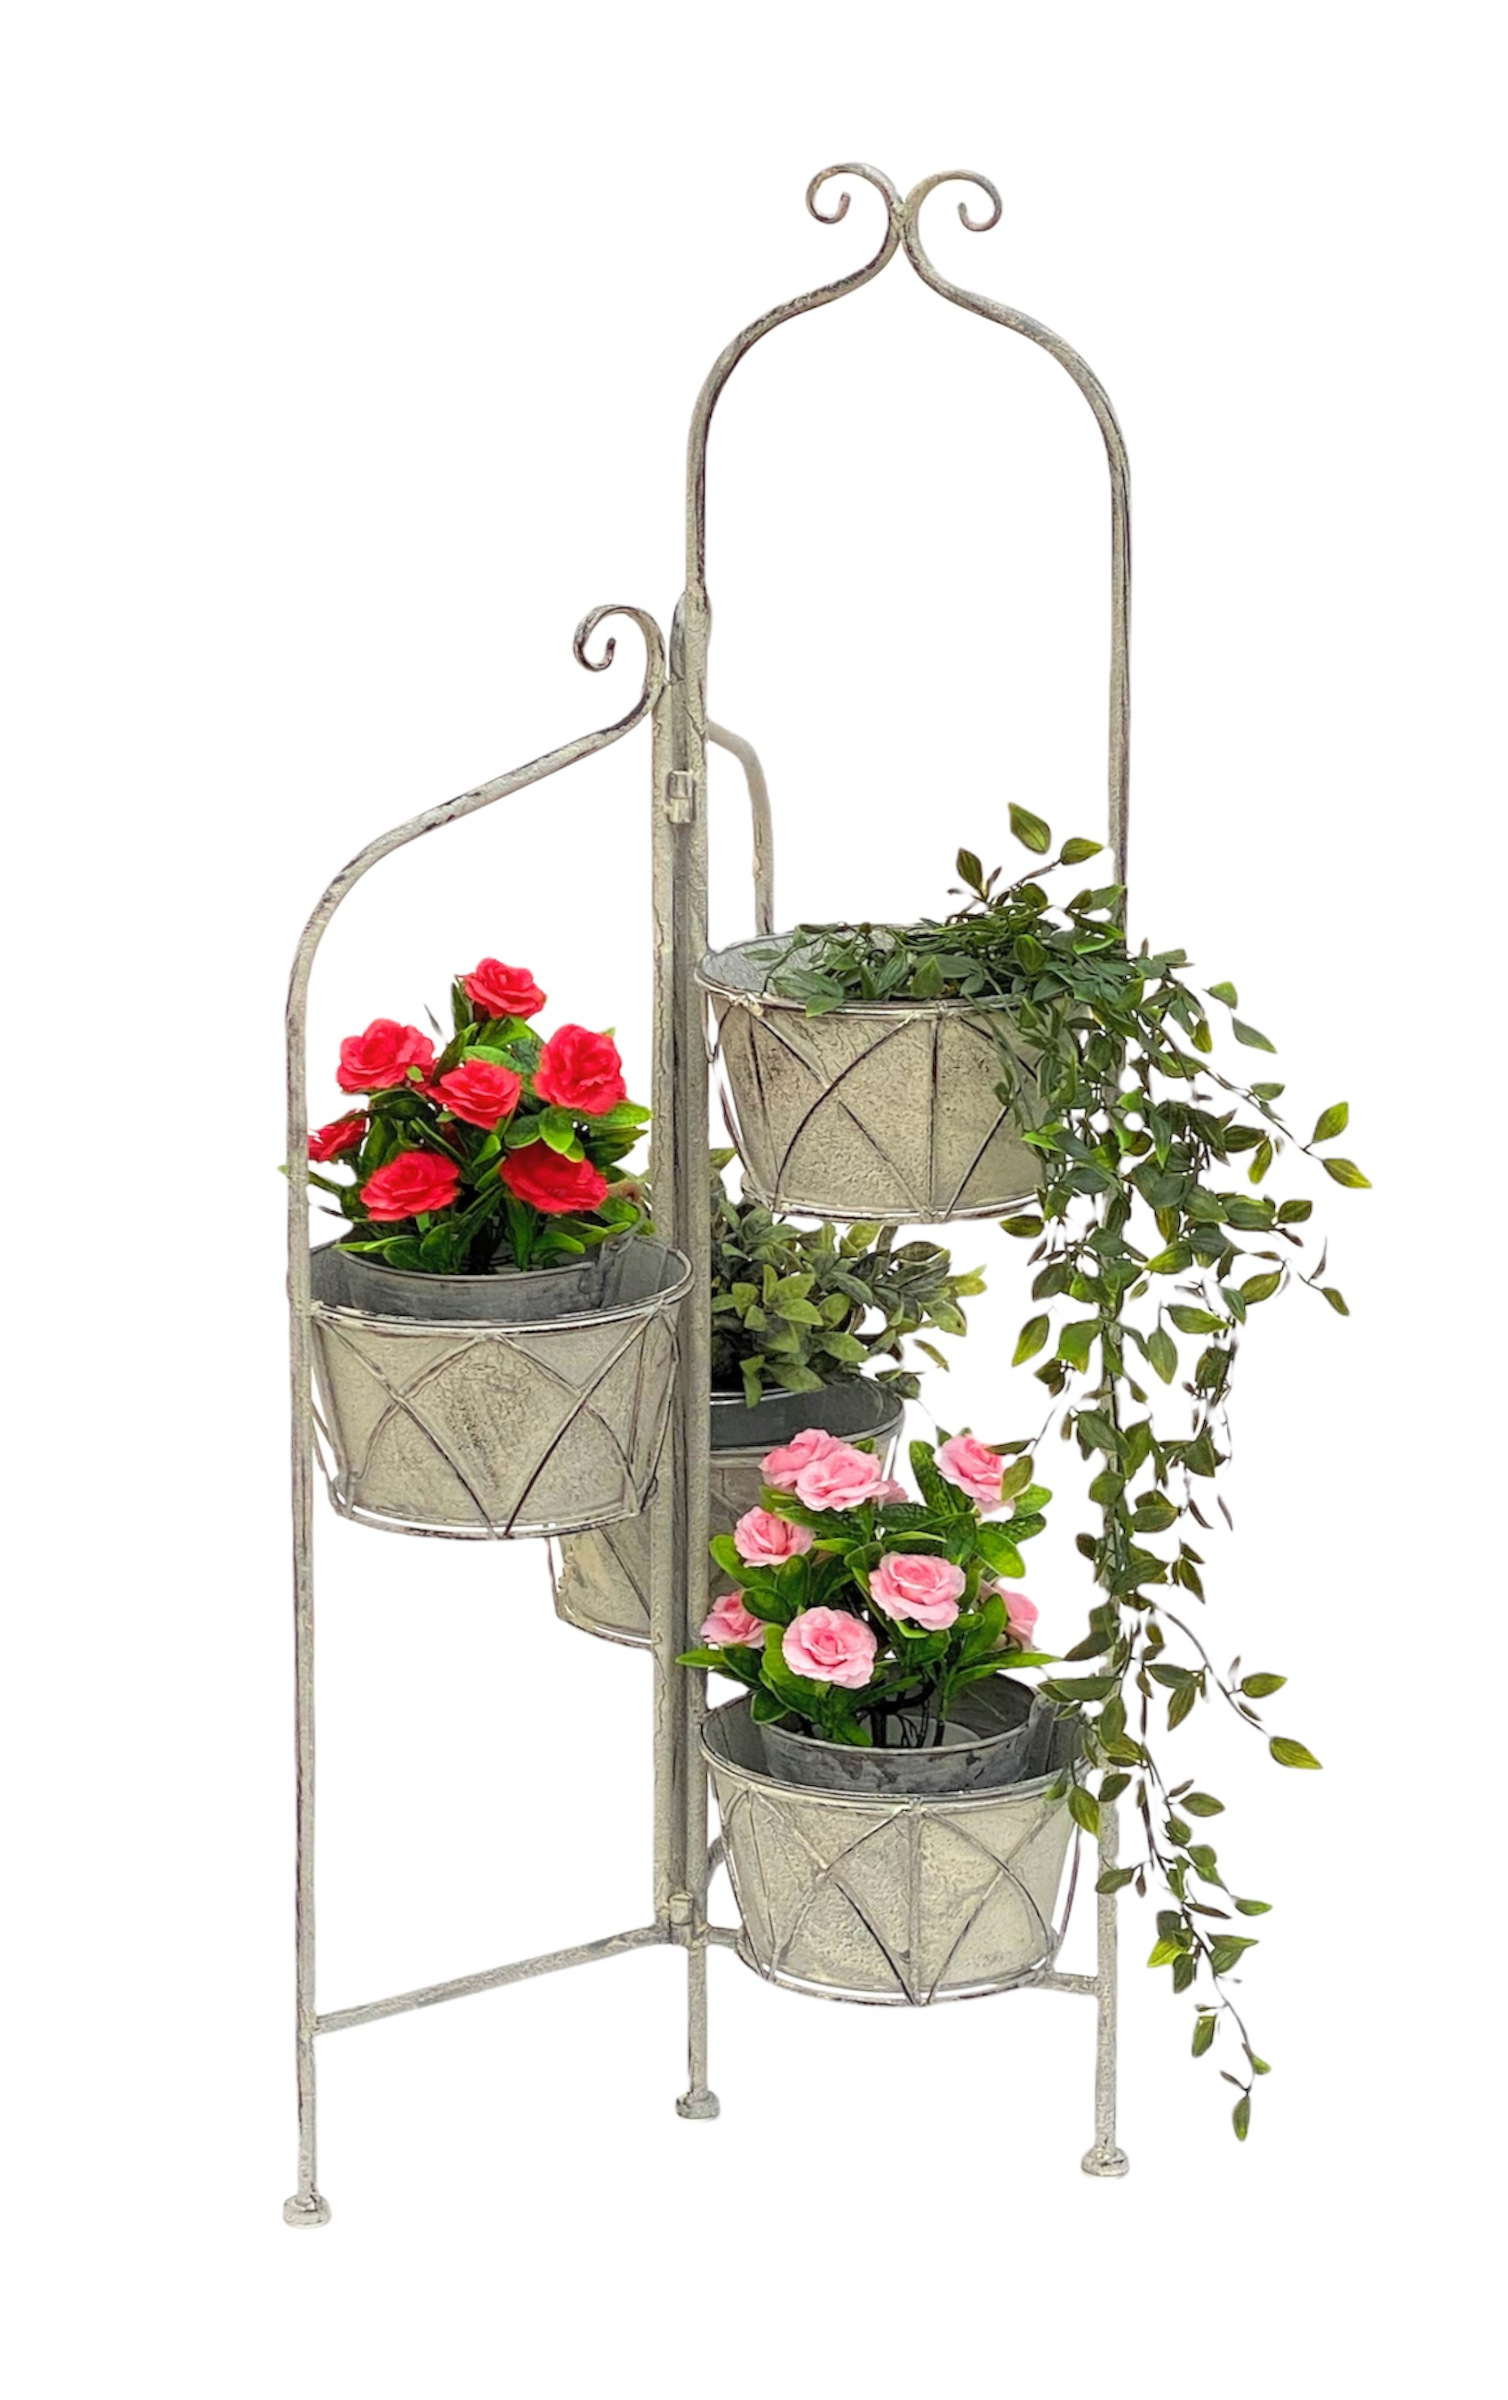 4 Blumenständer Blumensäule mit cm Metall Vintage Balkon Weiß Töpfe Blumentreppe 96128 Pflanzenständer Grau Innen DanDiBo-Ambiente Blumenständer - DanDiBo 100